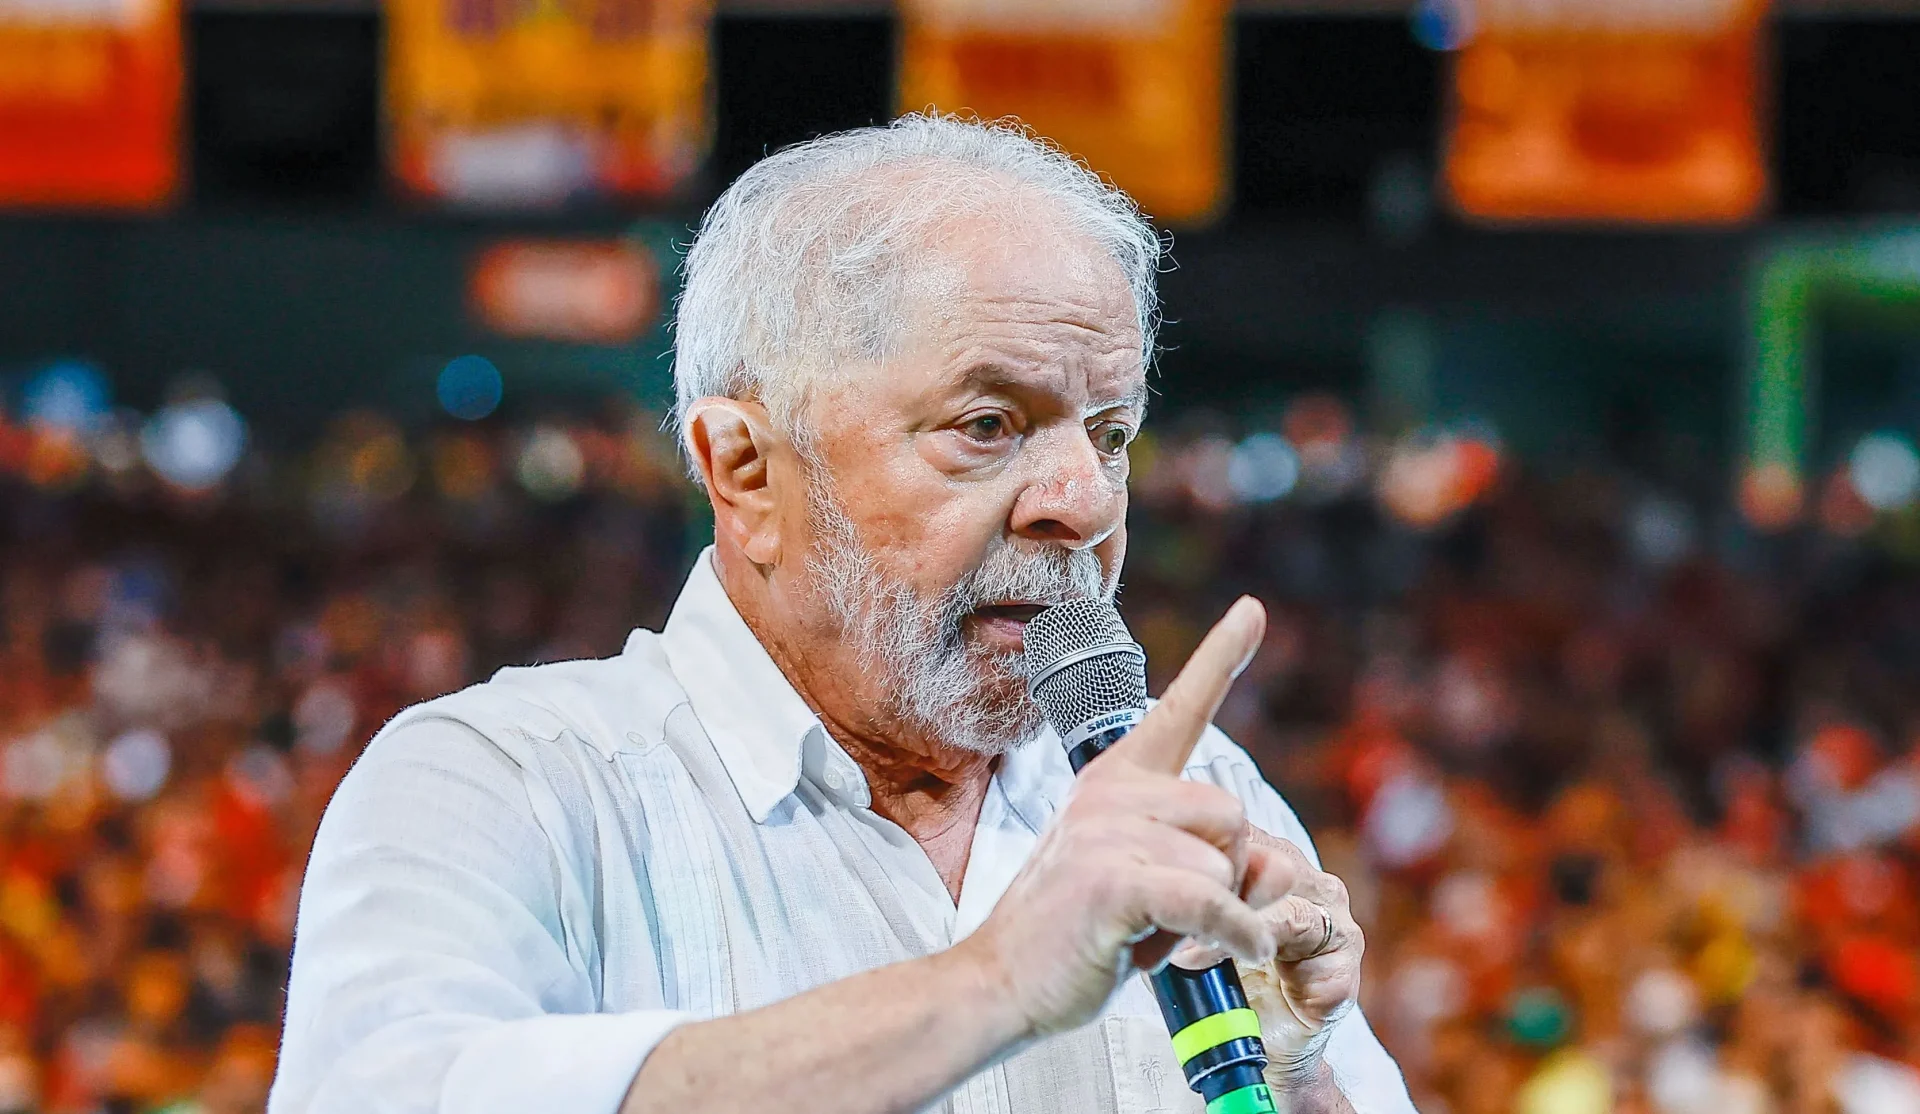 Mudanças no SALÁRIO MÍNIMO ganham novo capítulo com fortes críticas a Lula